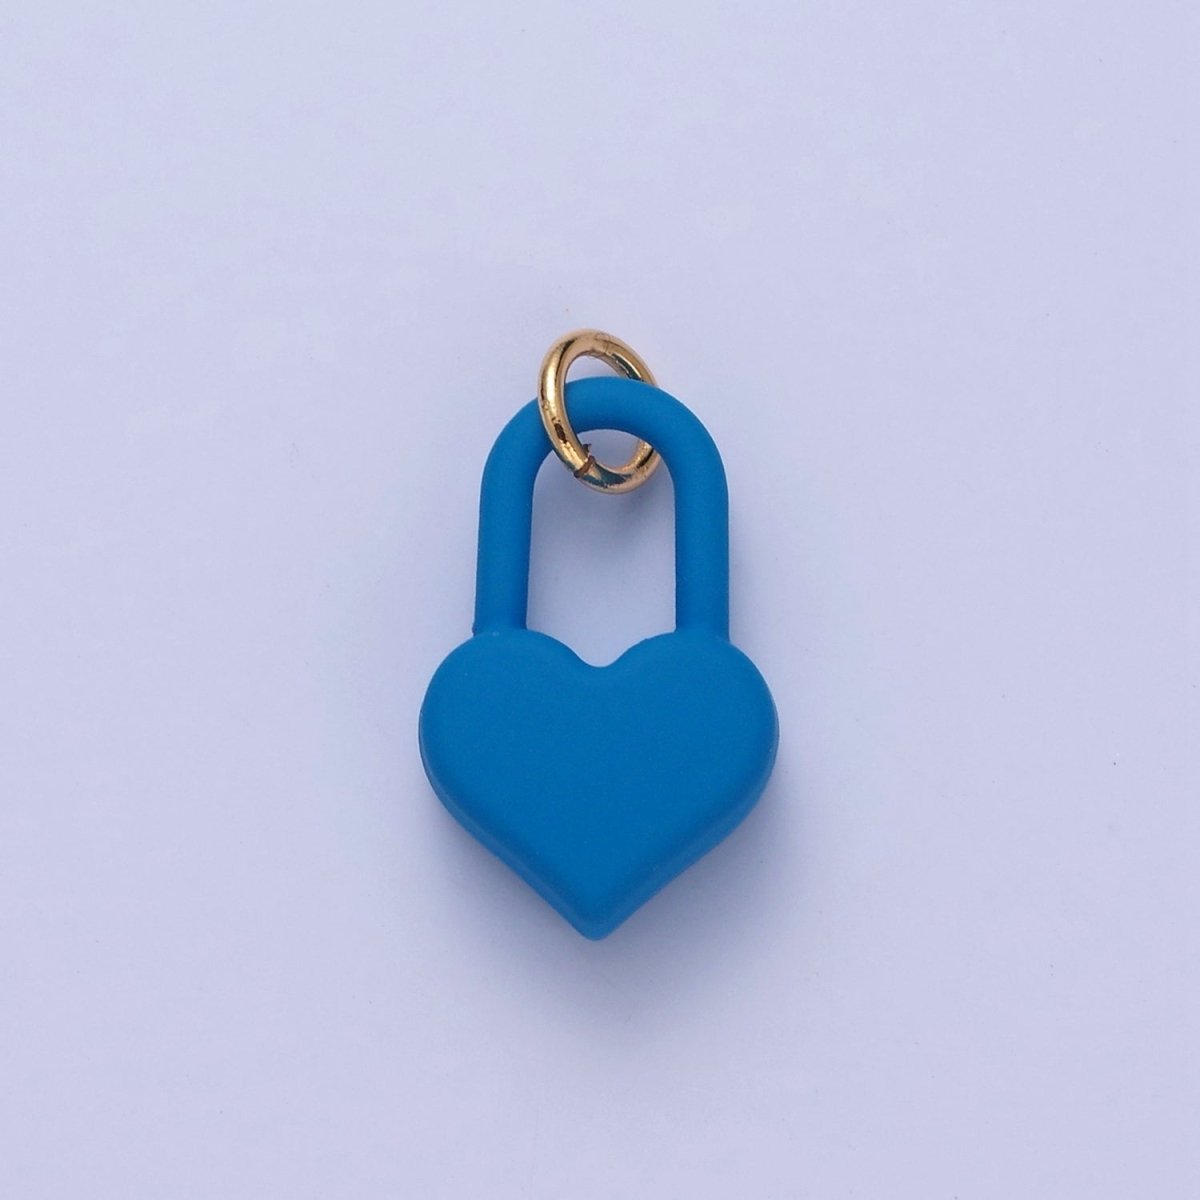 Dainty Matte Enamel Heart Lock Charm For Jewelry Making | W-302-W-311 - DLUXCA